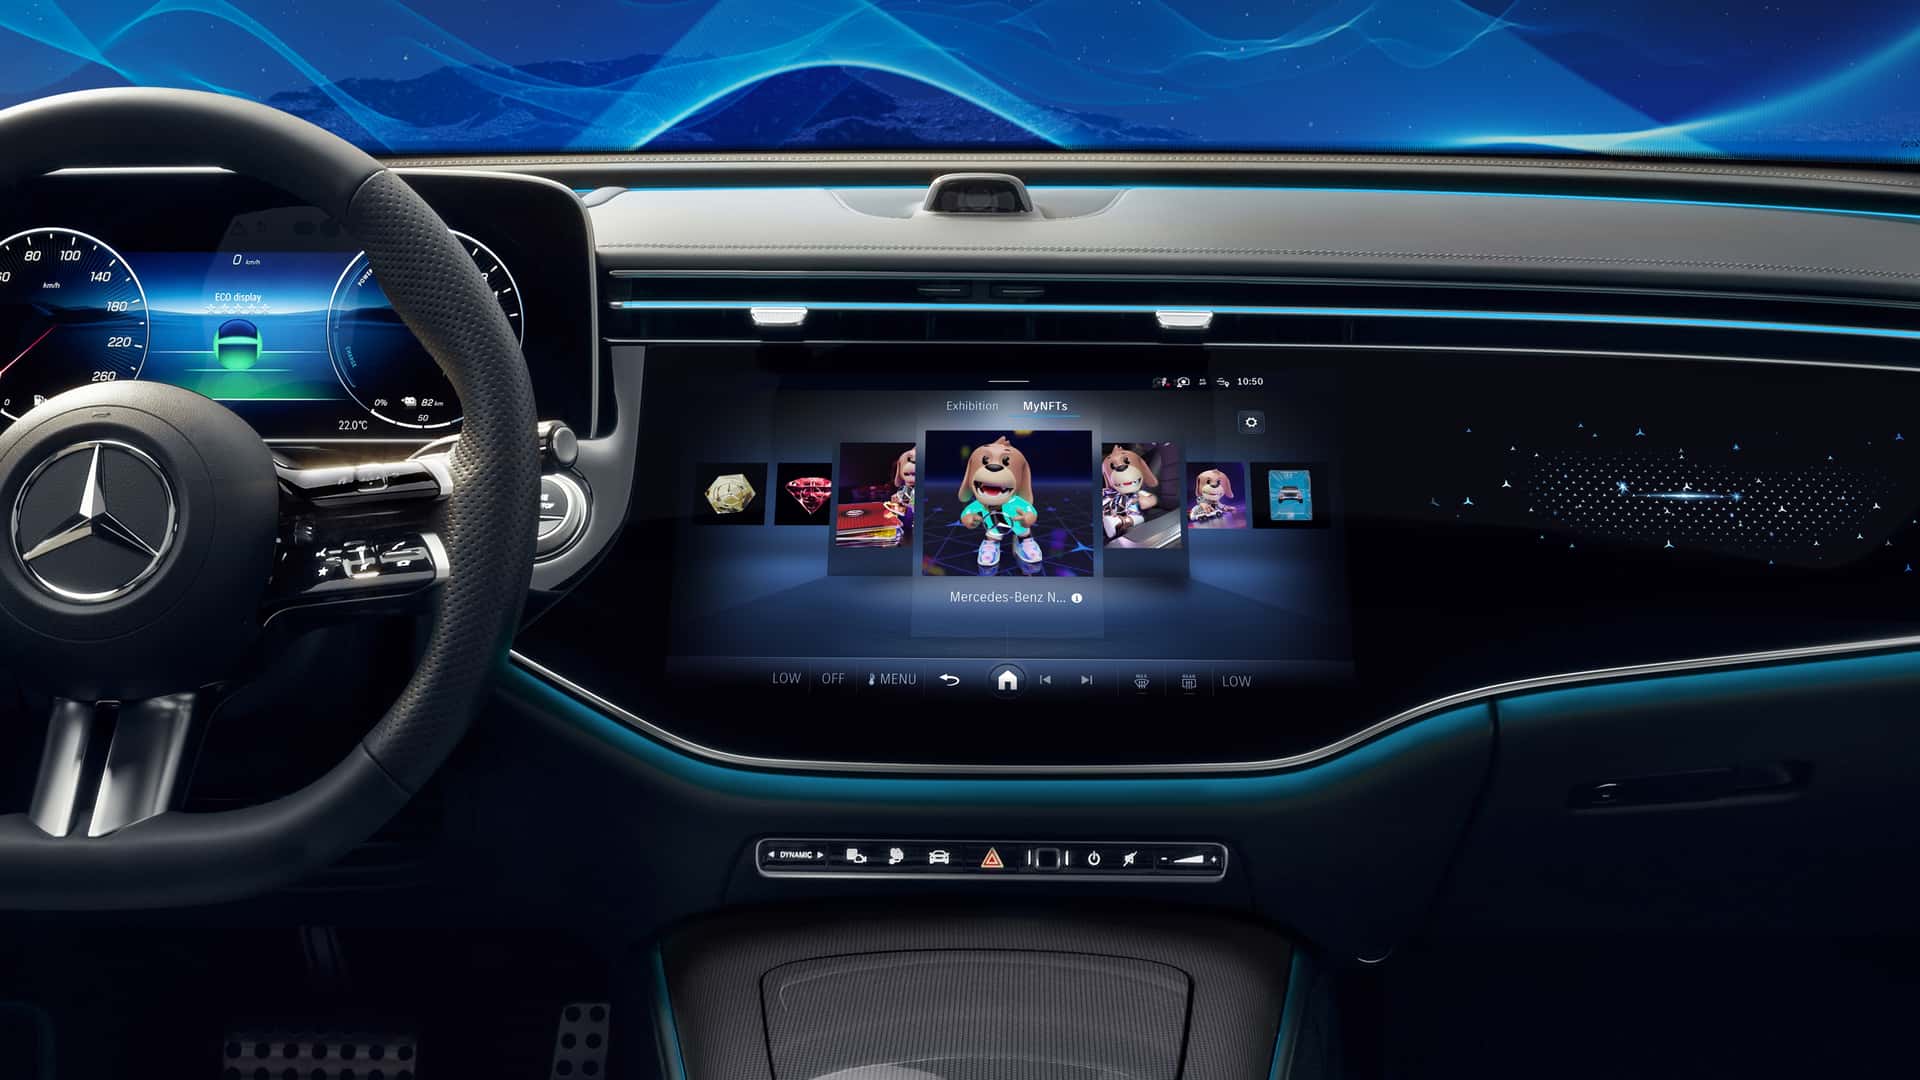 مرسيدس تكشف عن الجيل الجديد من نظام التشغيل لسياراتها بتقنيات مبتكرة جديدة 10